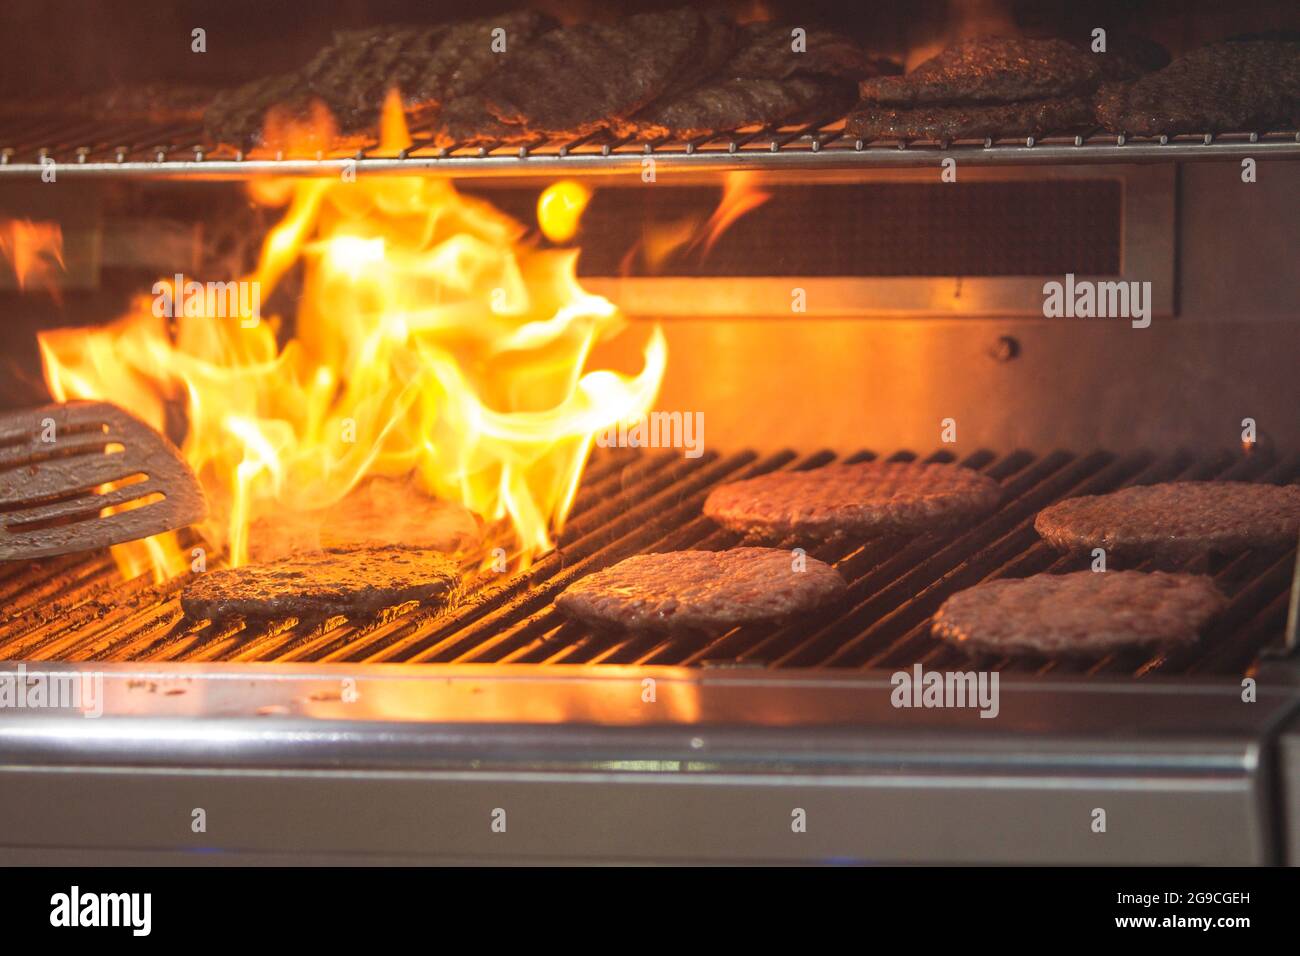 Hamburger werden auf einem Grill gebraten, während Flammen durch die Grillroste schießen. Stockfoto